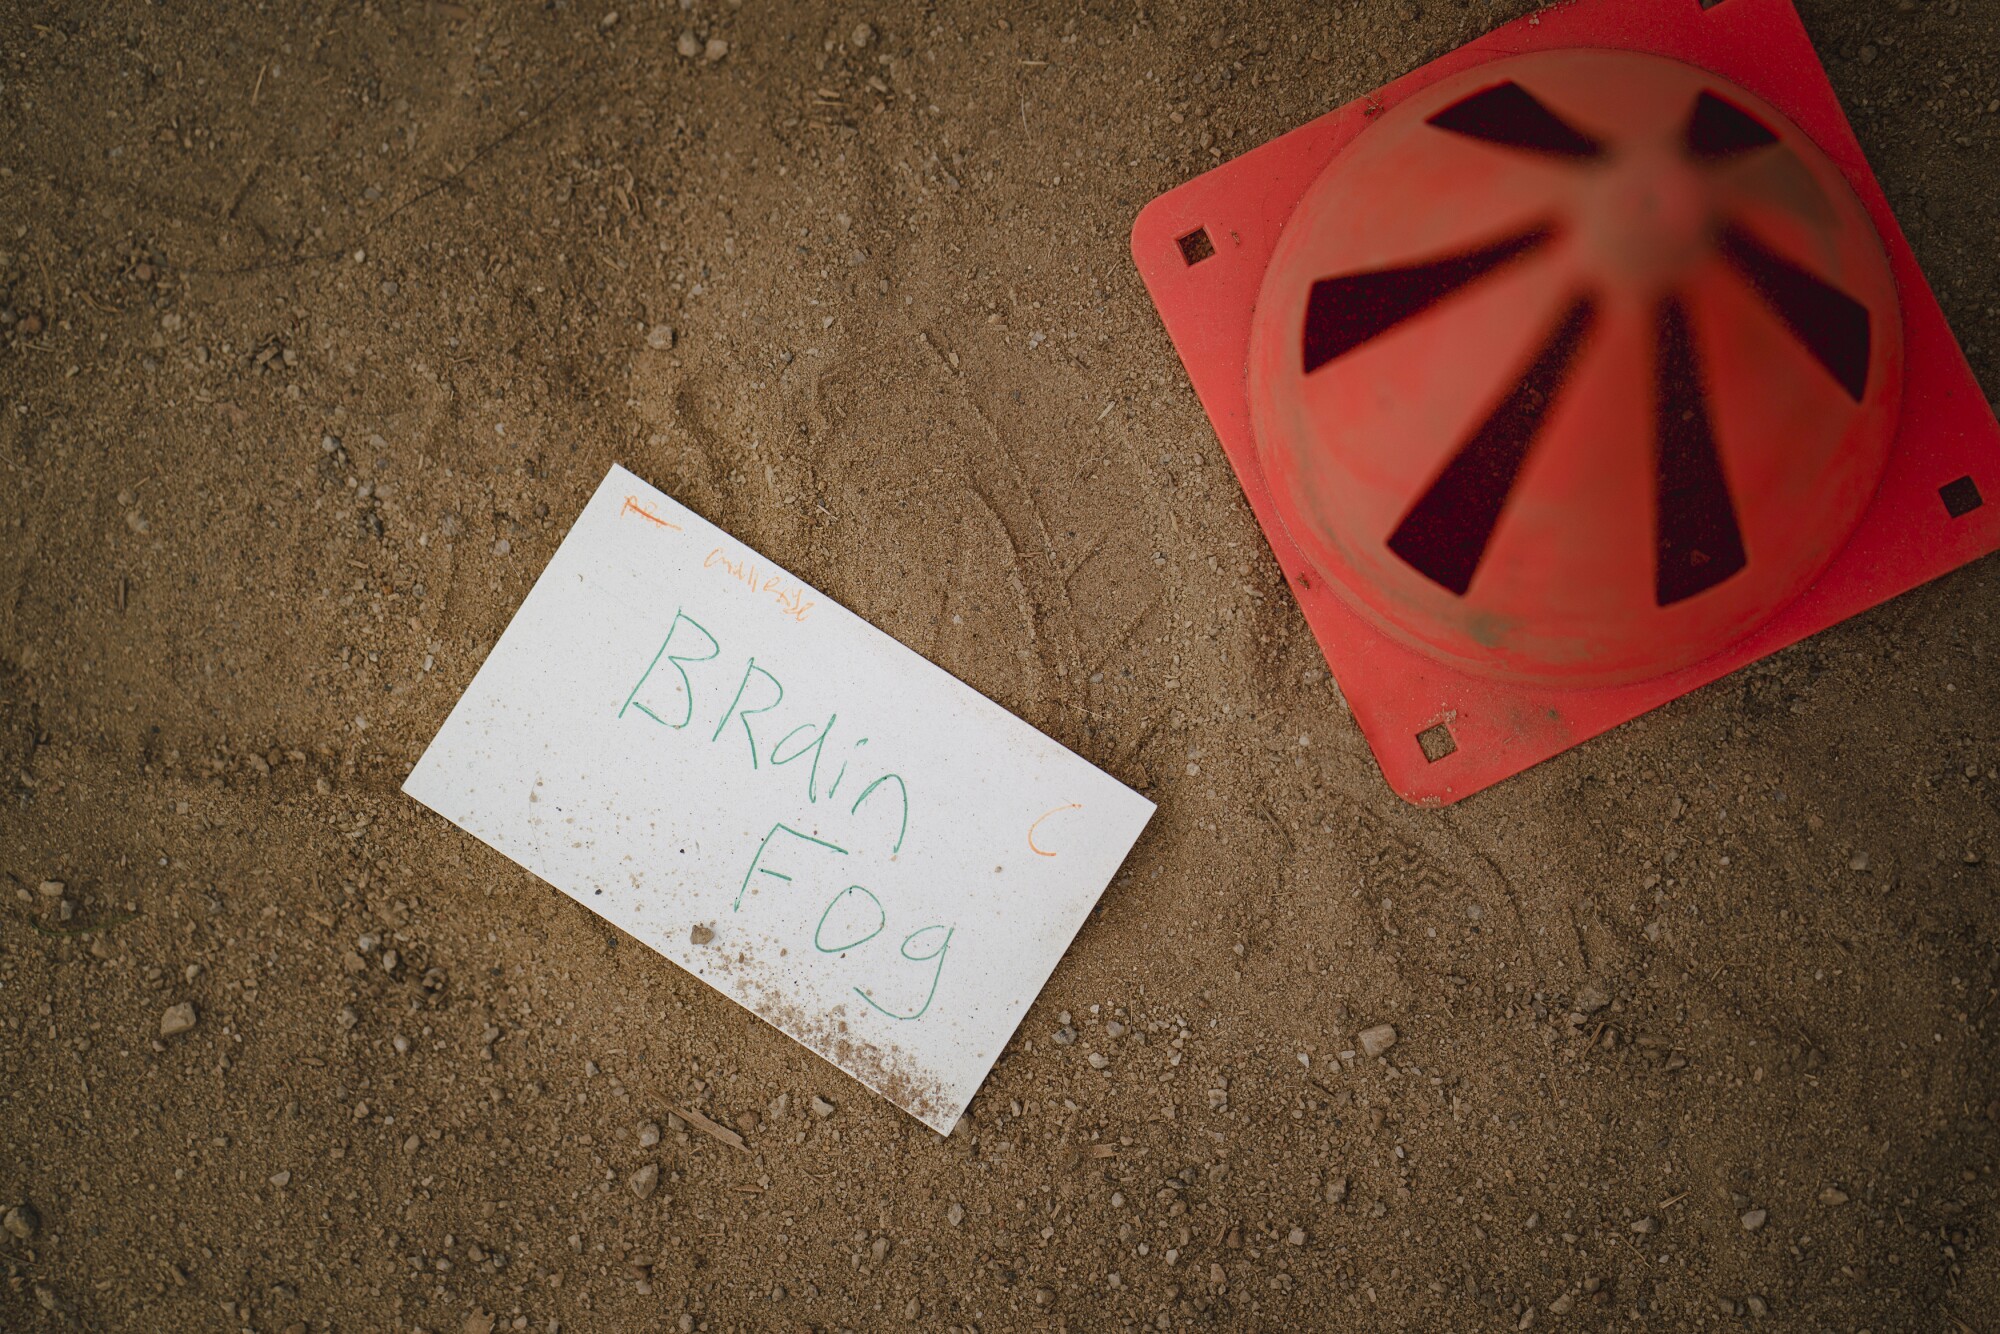 A card with the words 'brain fog' lies on a dirt floor.